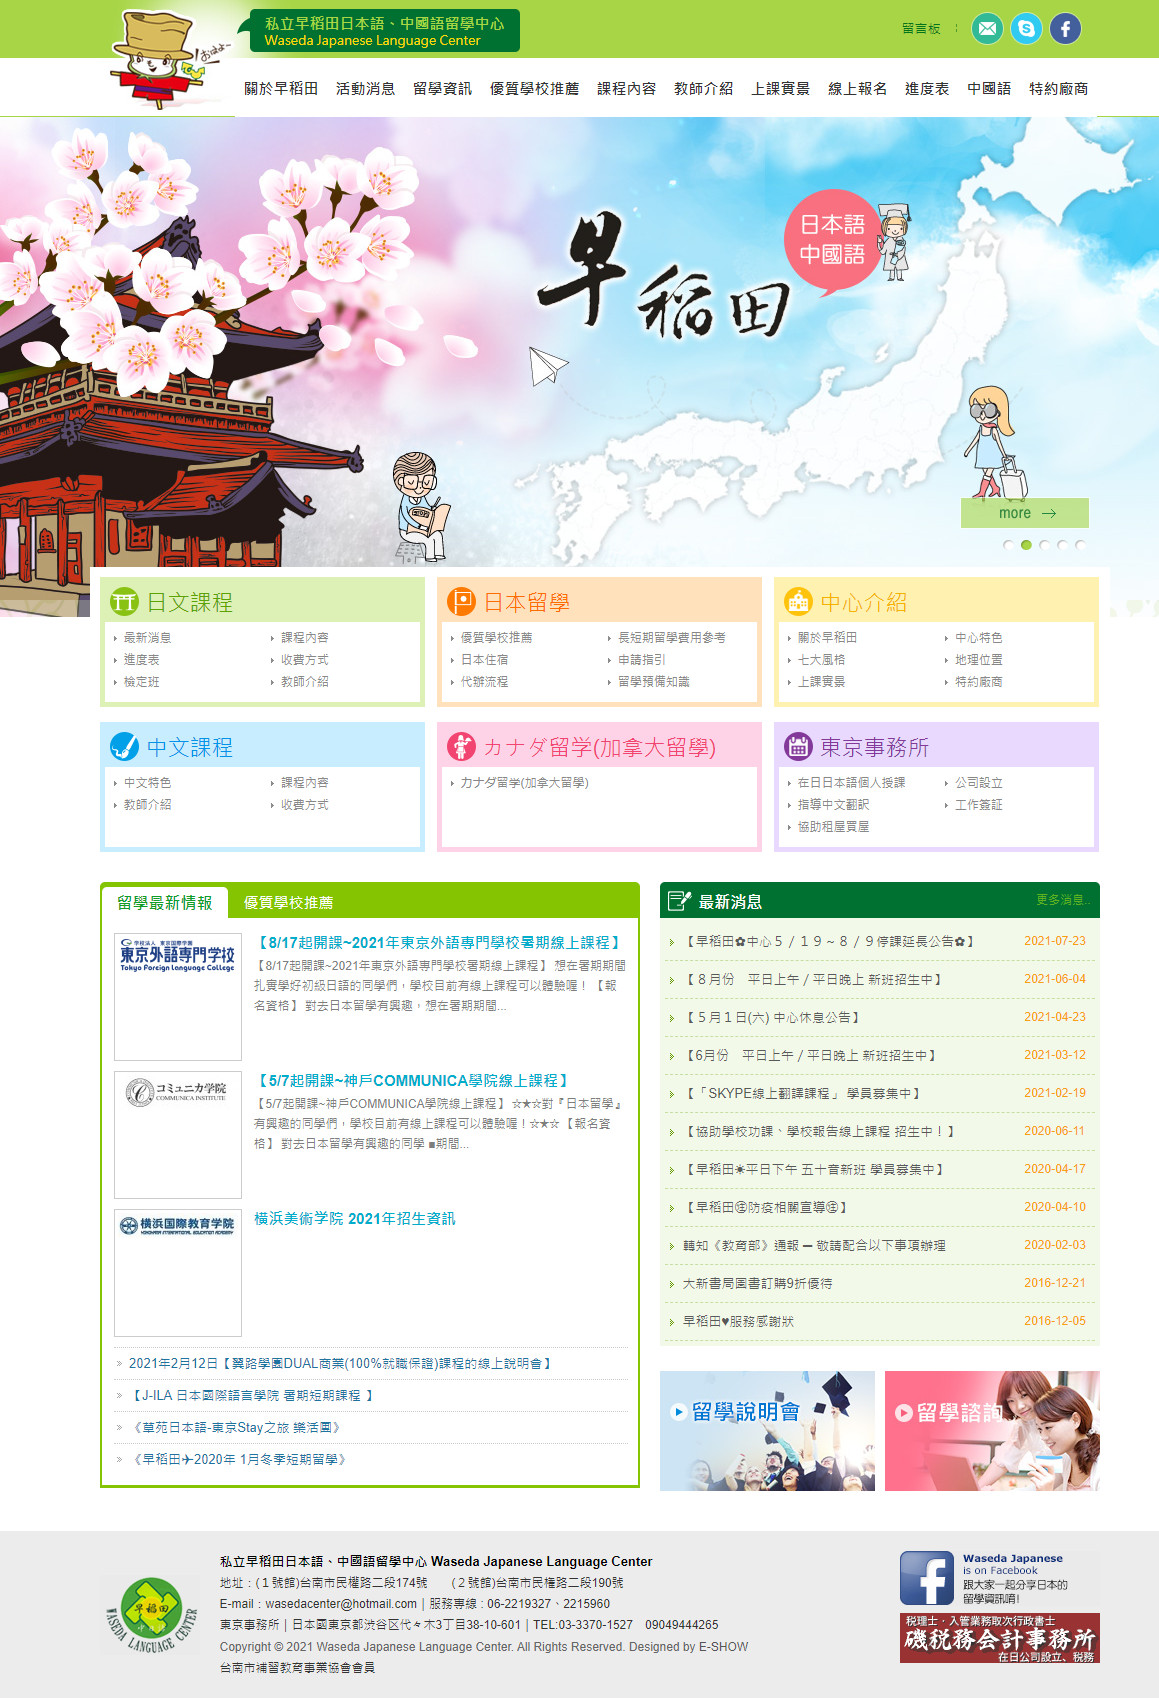 早稻田日本語 日語補習班網站設計
網站設計